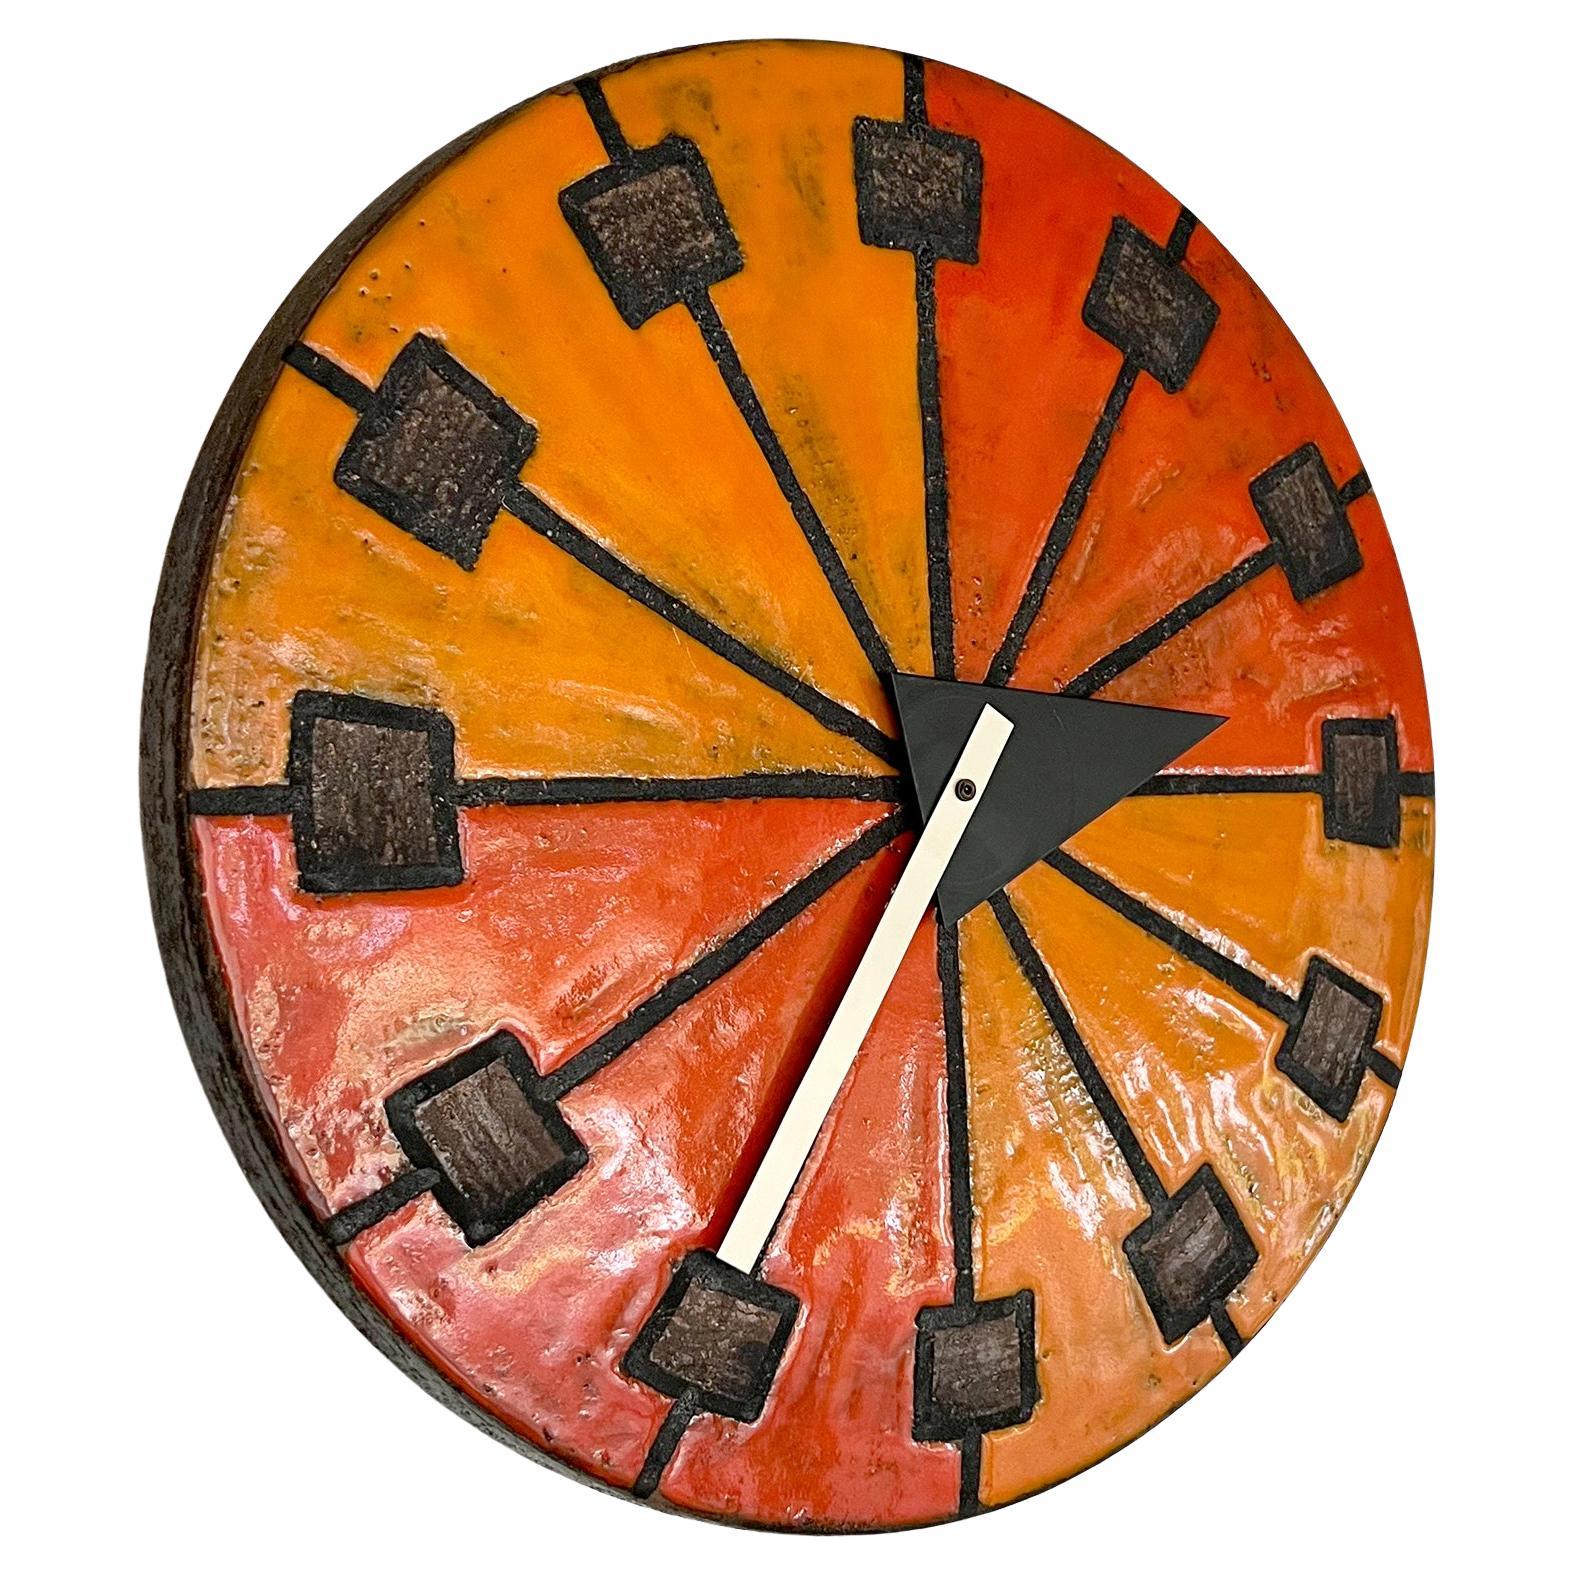 Horloge Howard Miller Meridian en glaçures rouge/orange et jaune doré sur un corps en terre chamottée, vers les années 1960. L'horloge mesure 14